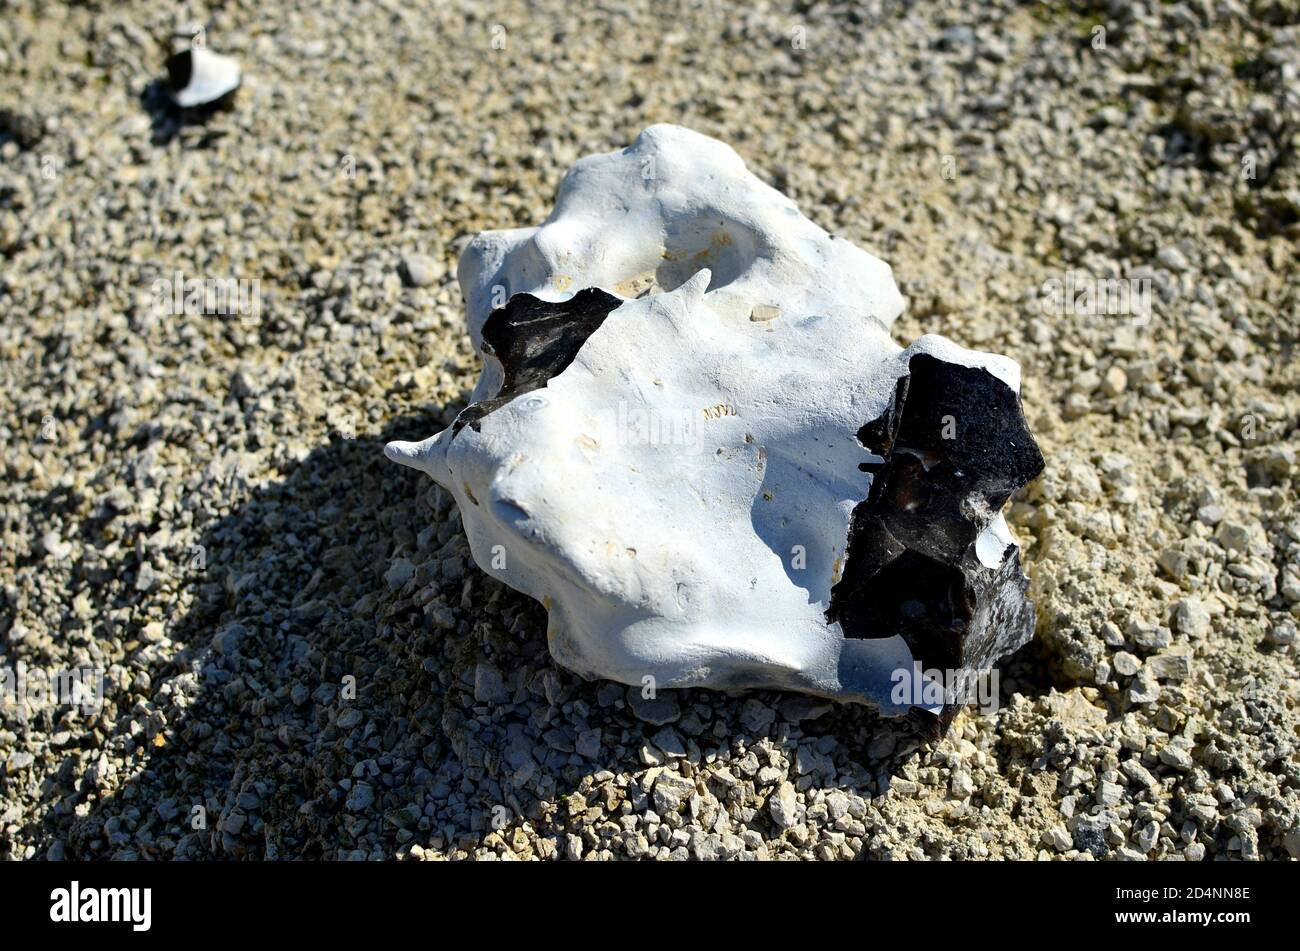 Natürliche Kreidesteine Hintergrund. Kreide ist ein weiches, weißes,  poröses, sedimentäres Karbonatgestein, eine Form von Kalkstein, der aus dem  Mineral Calcit besteht. Rock Stockfotografie - Alamy